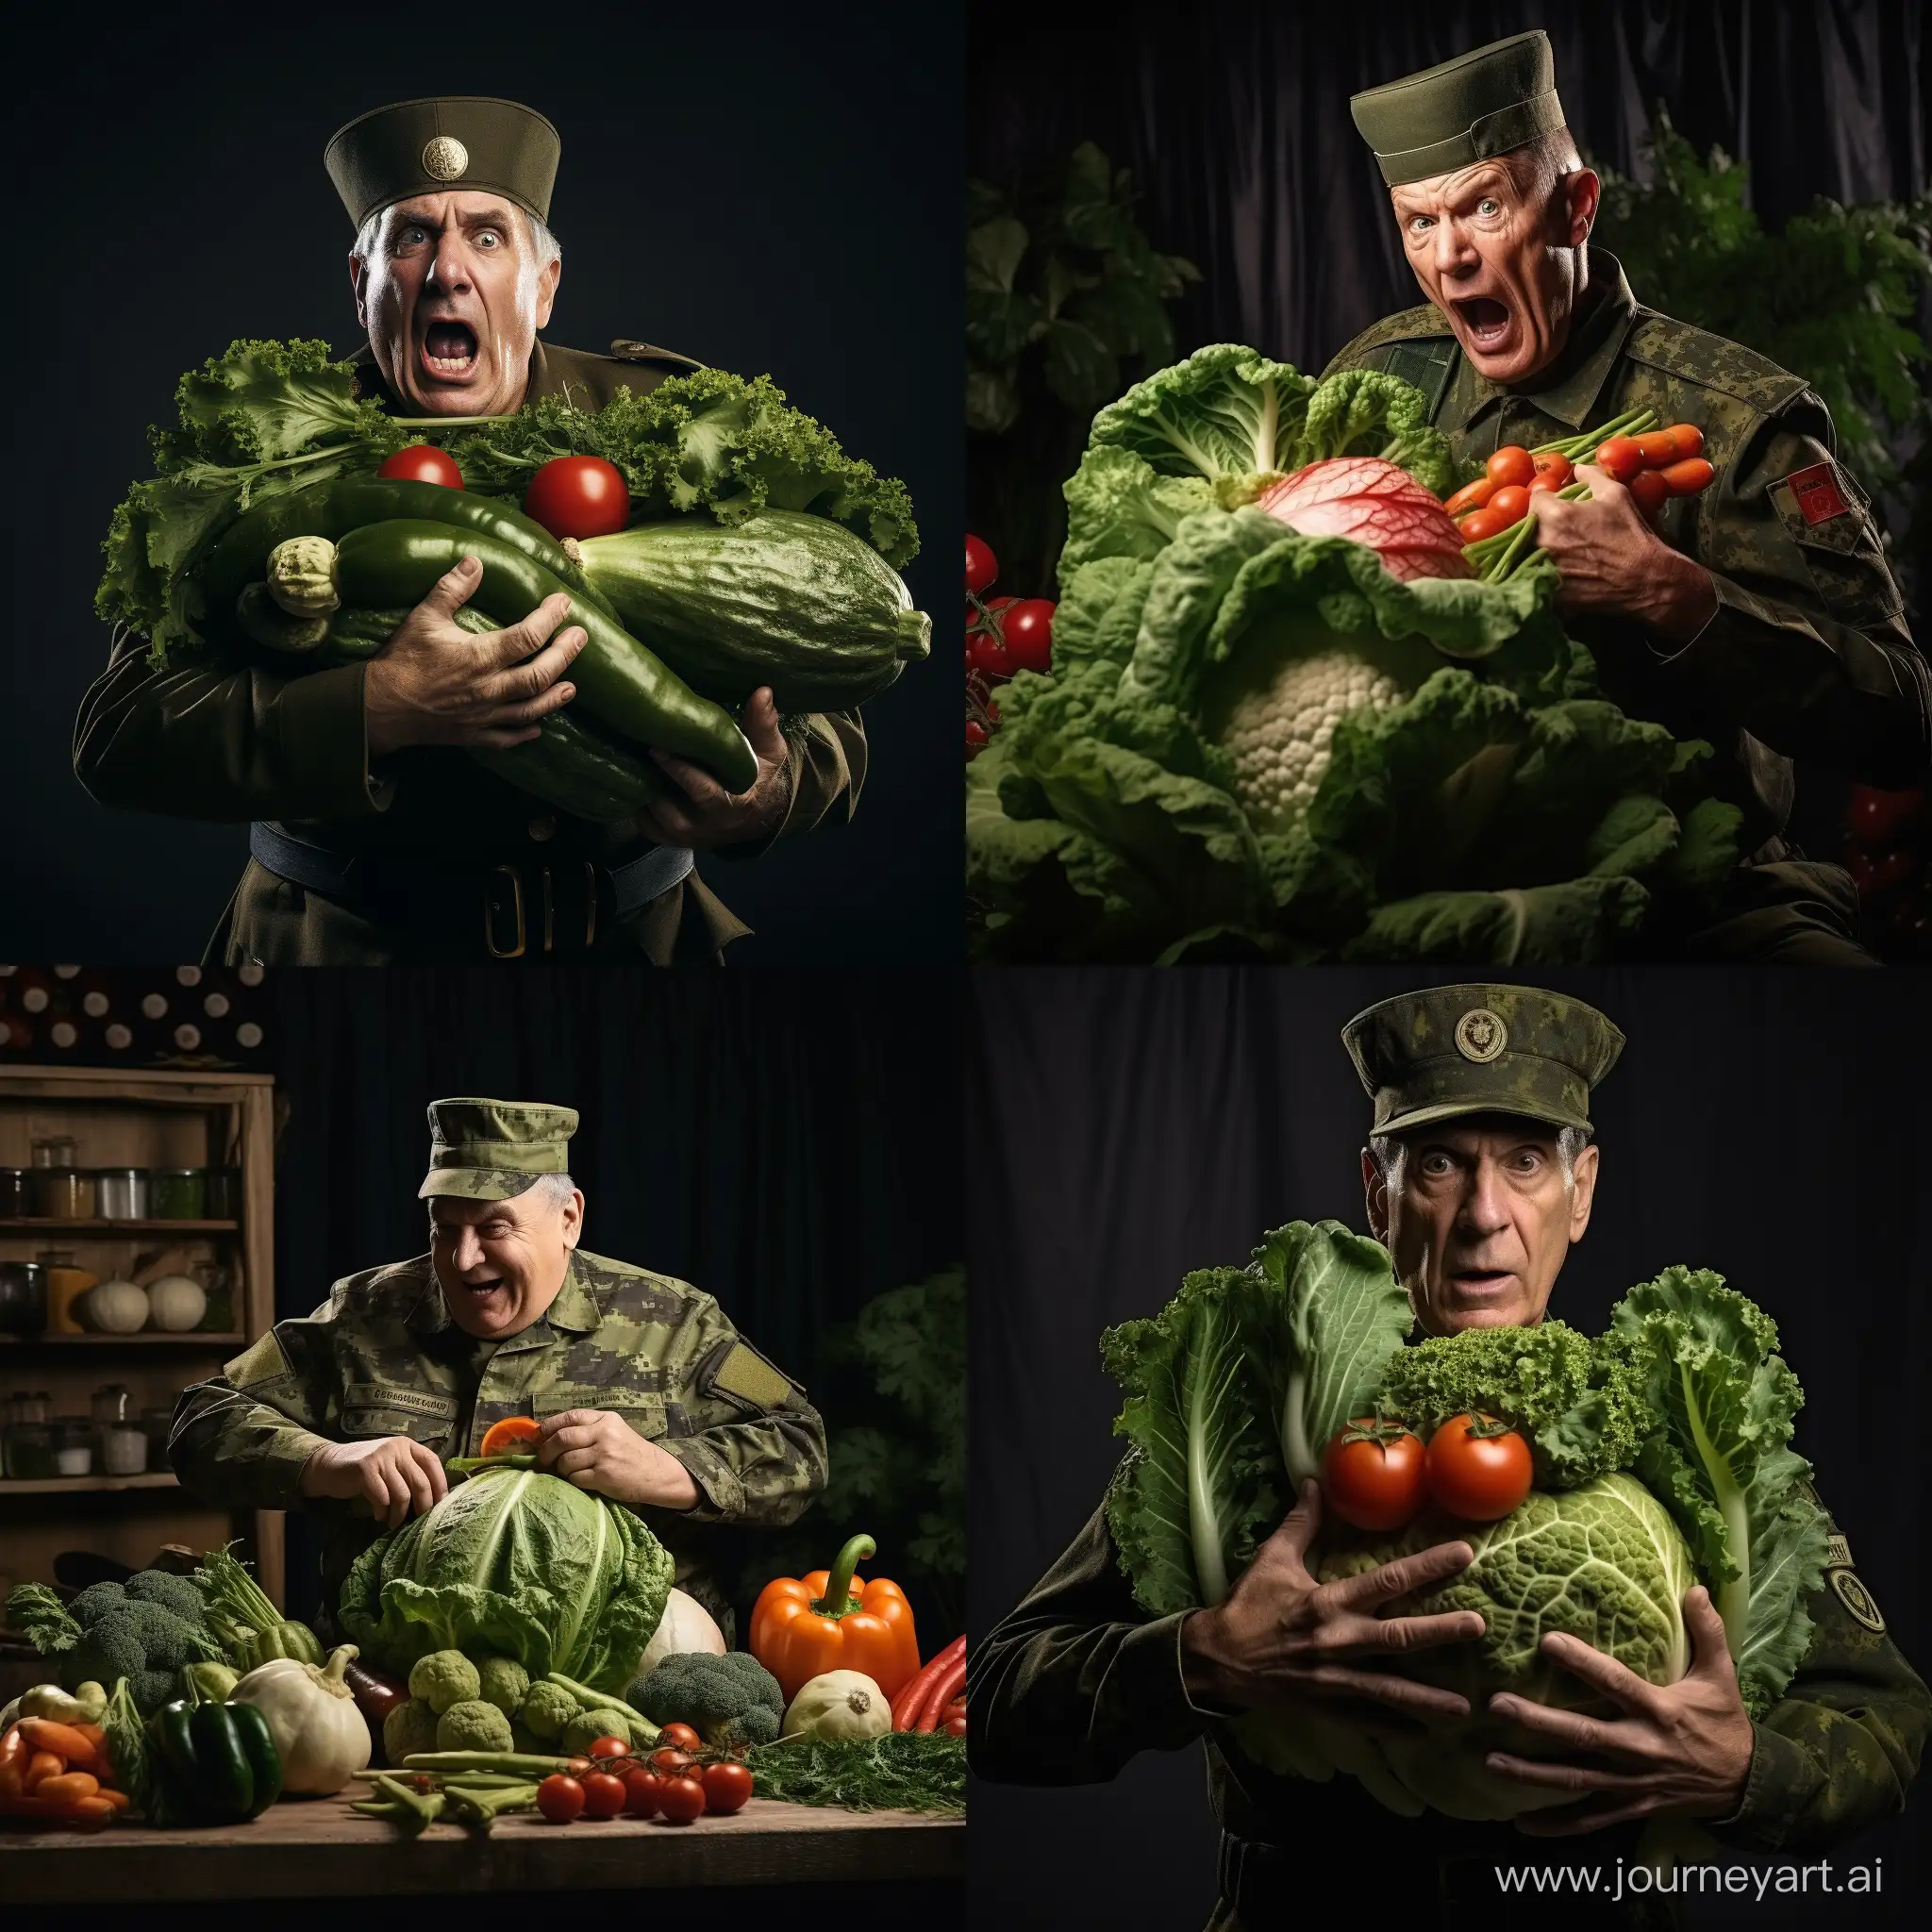 мужчина в военной форме старшего лейтенанта  сражается с большими живыми овощами